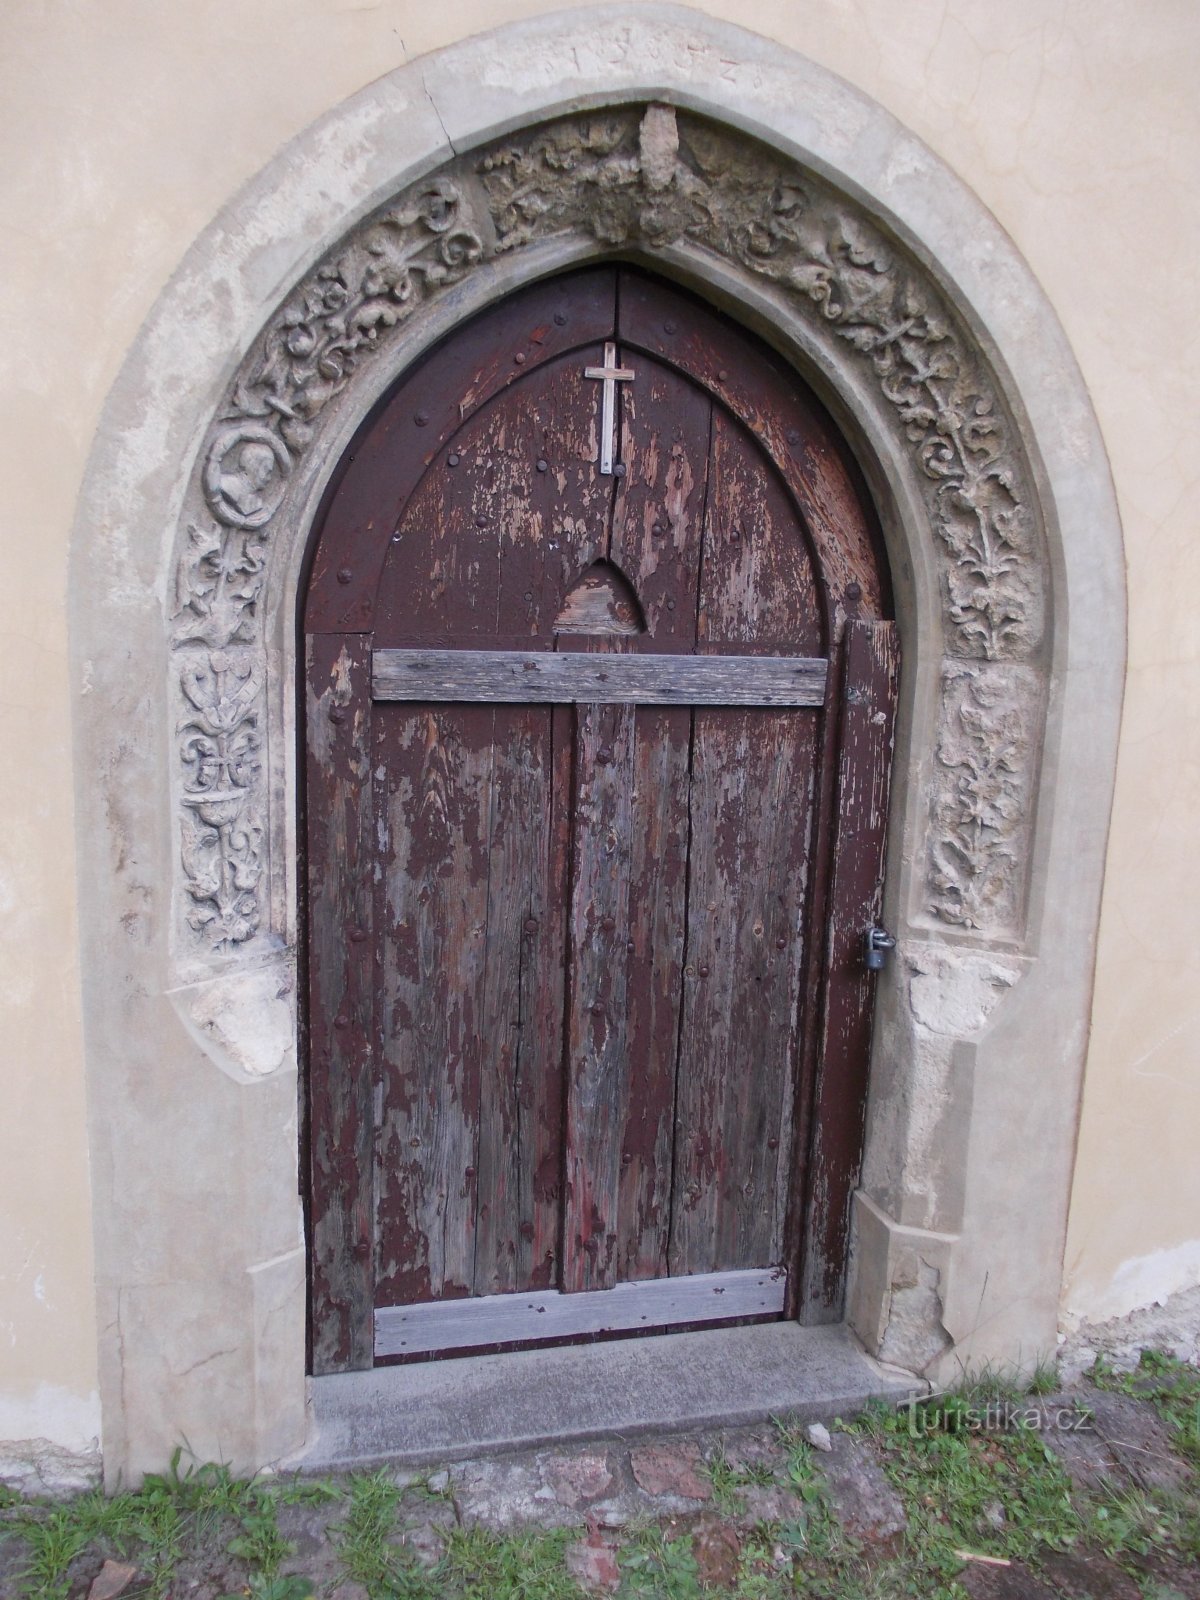 entrada com portal em arco